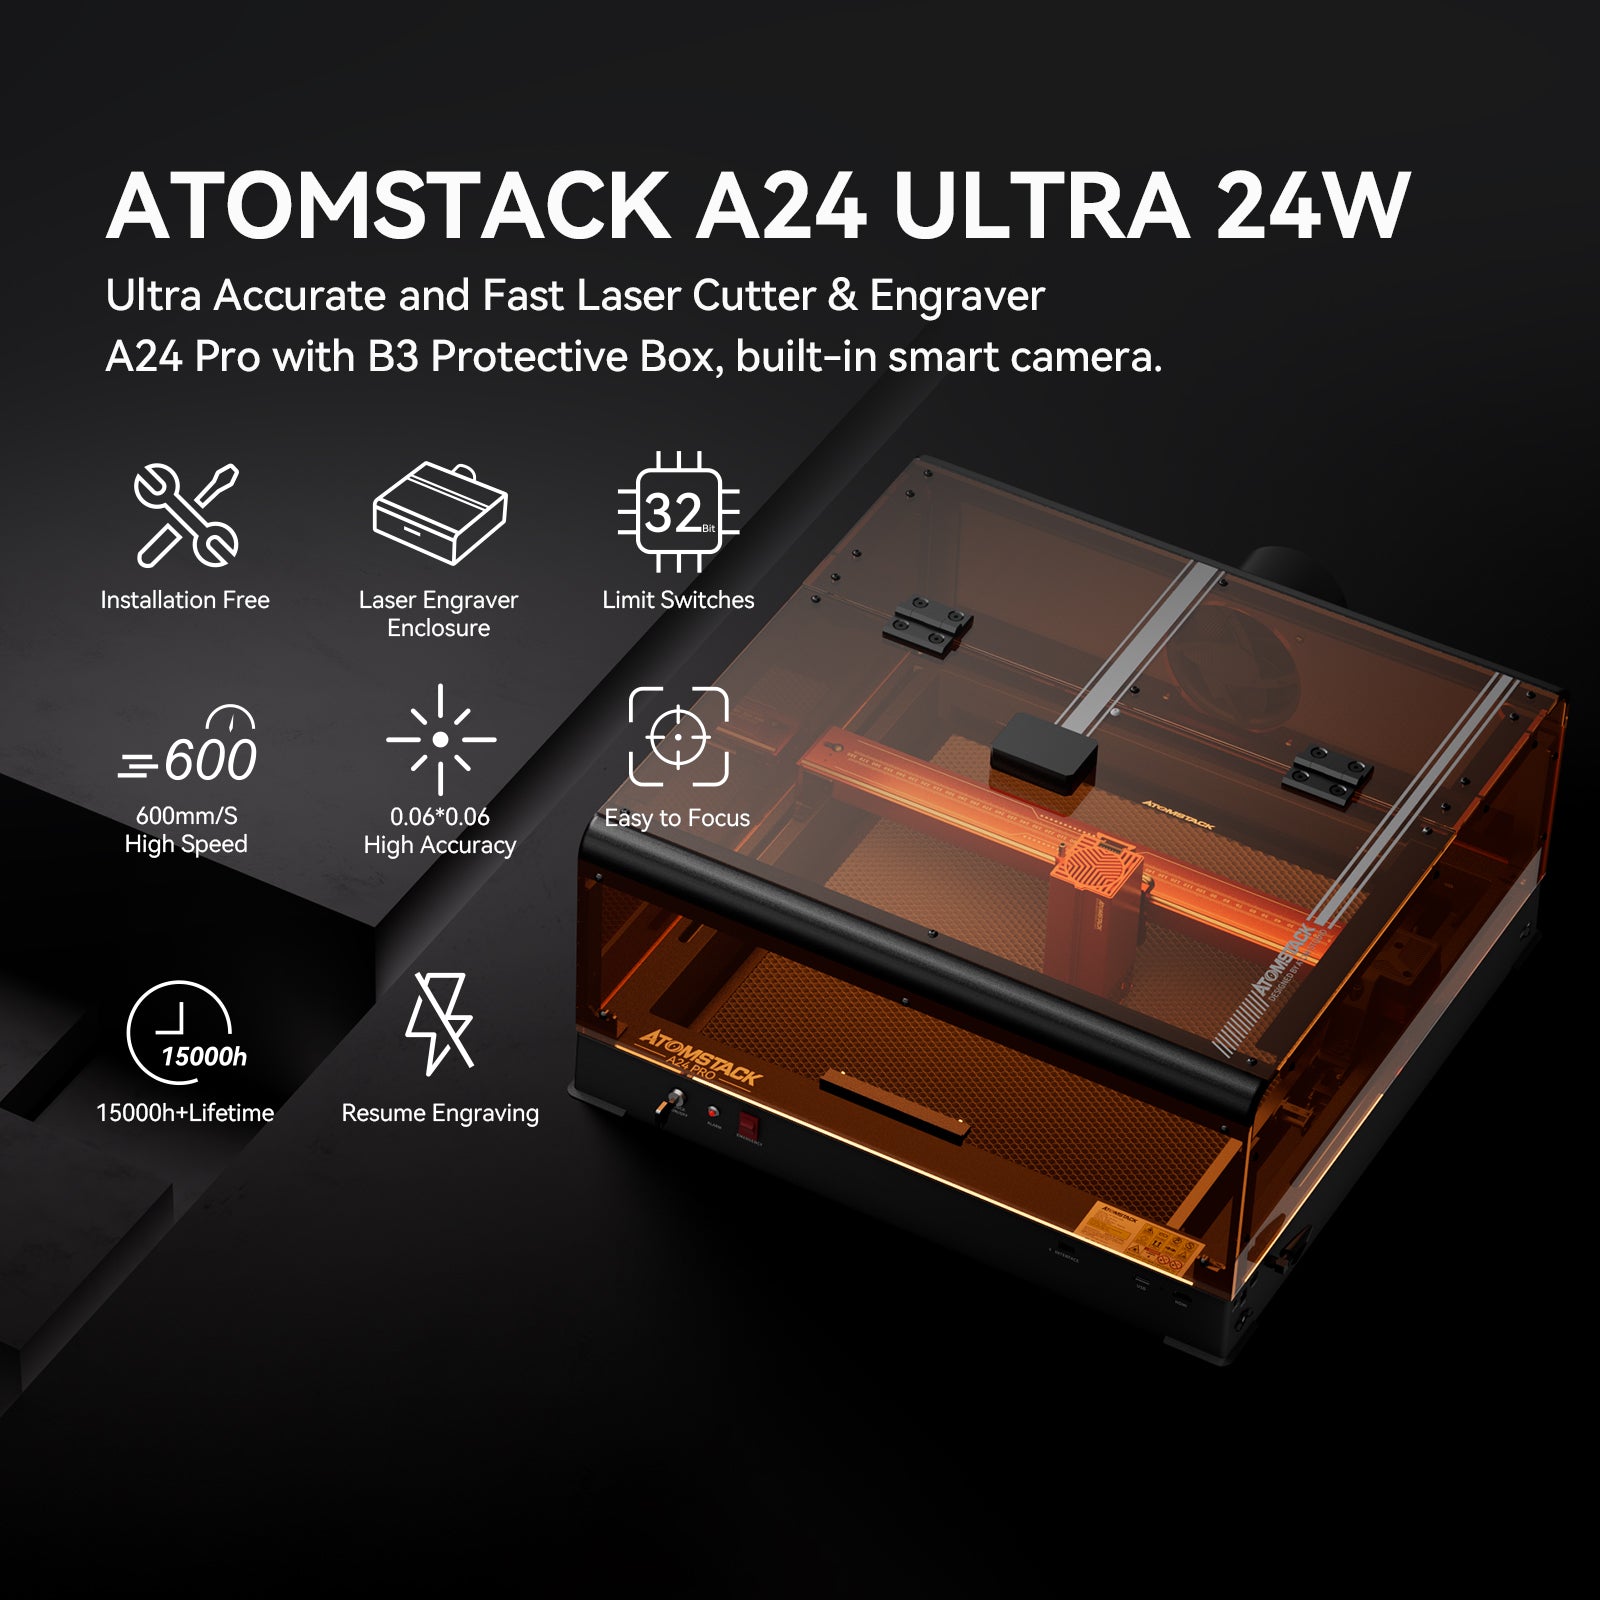 AtomStack A24 Pro puissance optique 24W graveur laser cadre Unibody aucun assemblage requis 